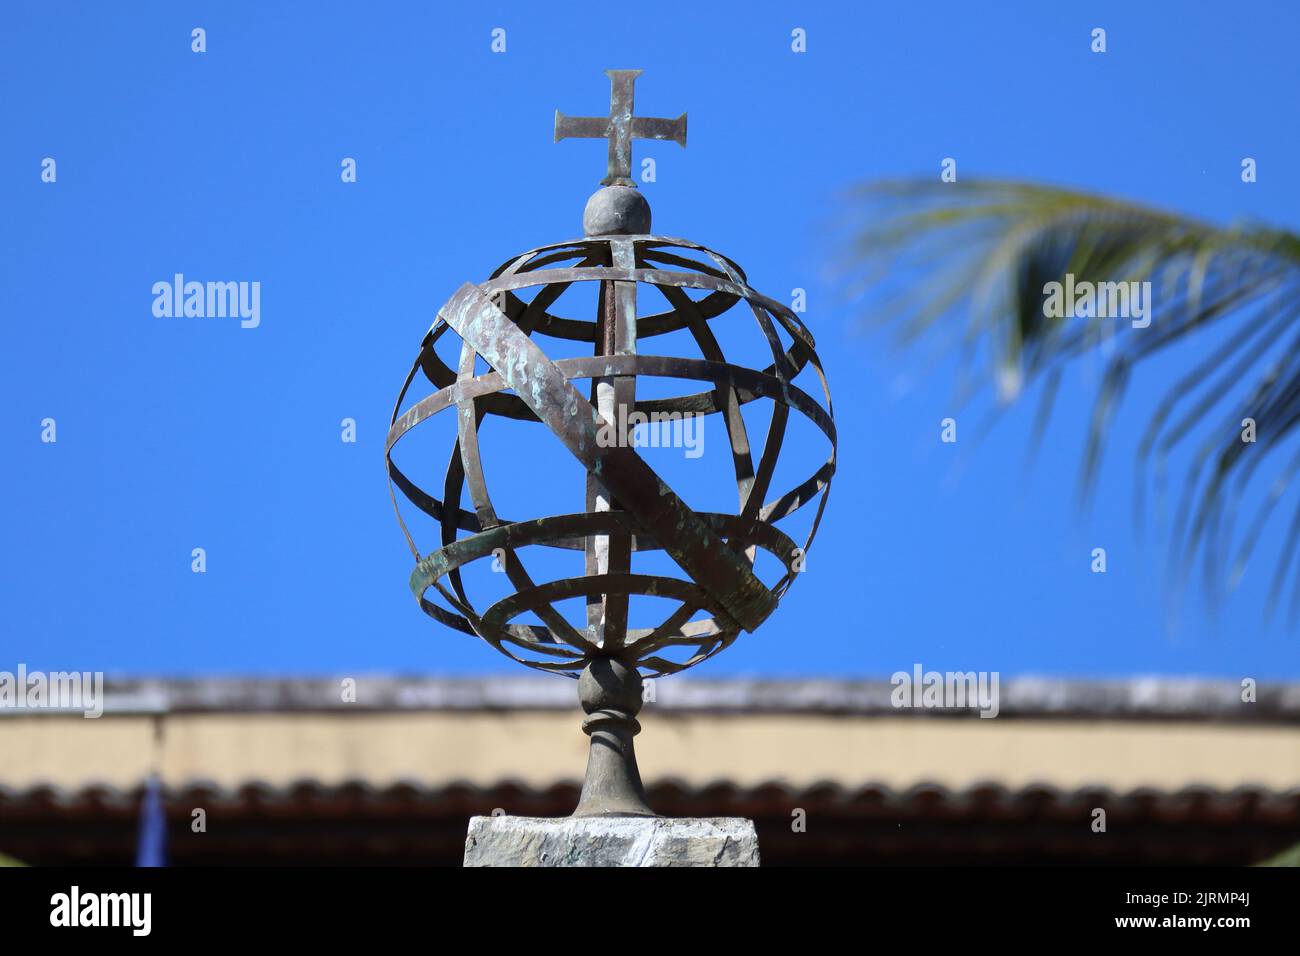 Esfera Armillaria Metálica, Esfera Armilar, símbolo de Portugal y antigua herramienta de navegación, en Fernando de Noronha, Brasil Foto de stock